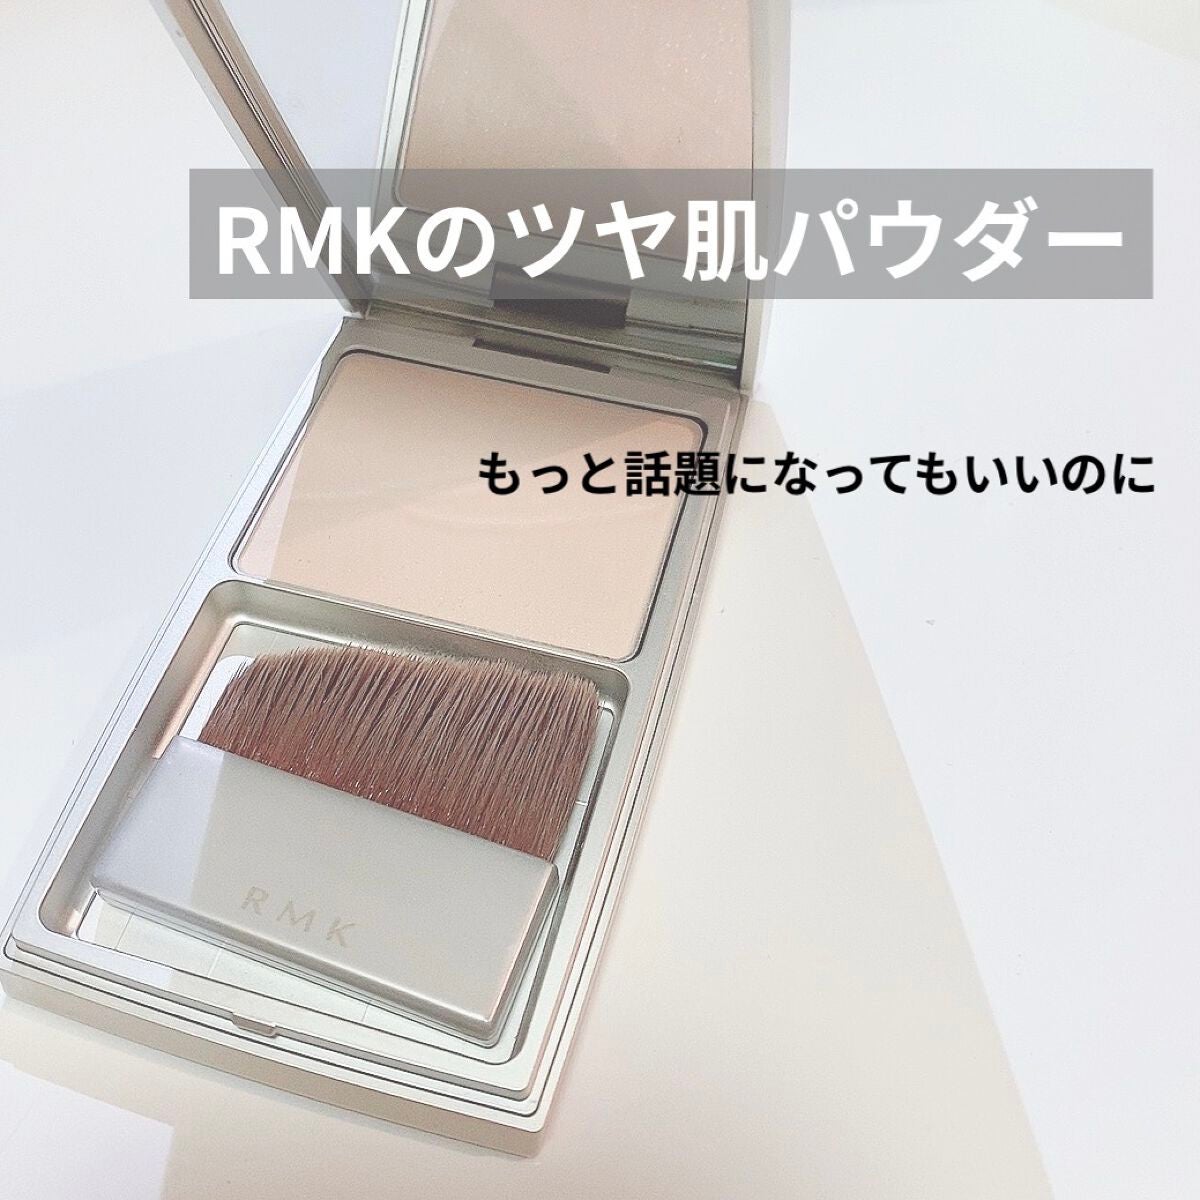 【新品】RMK シルクフィット フェイスパウダー #01 ブラシ付き